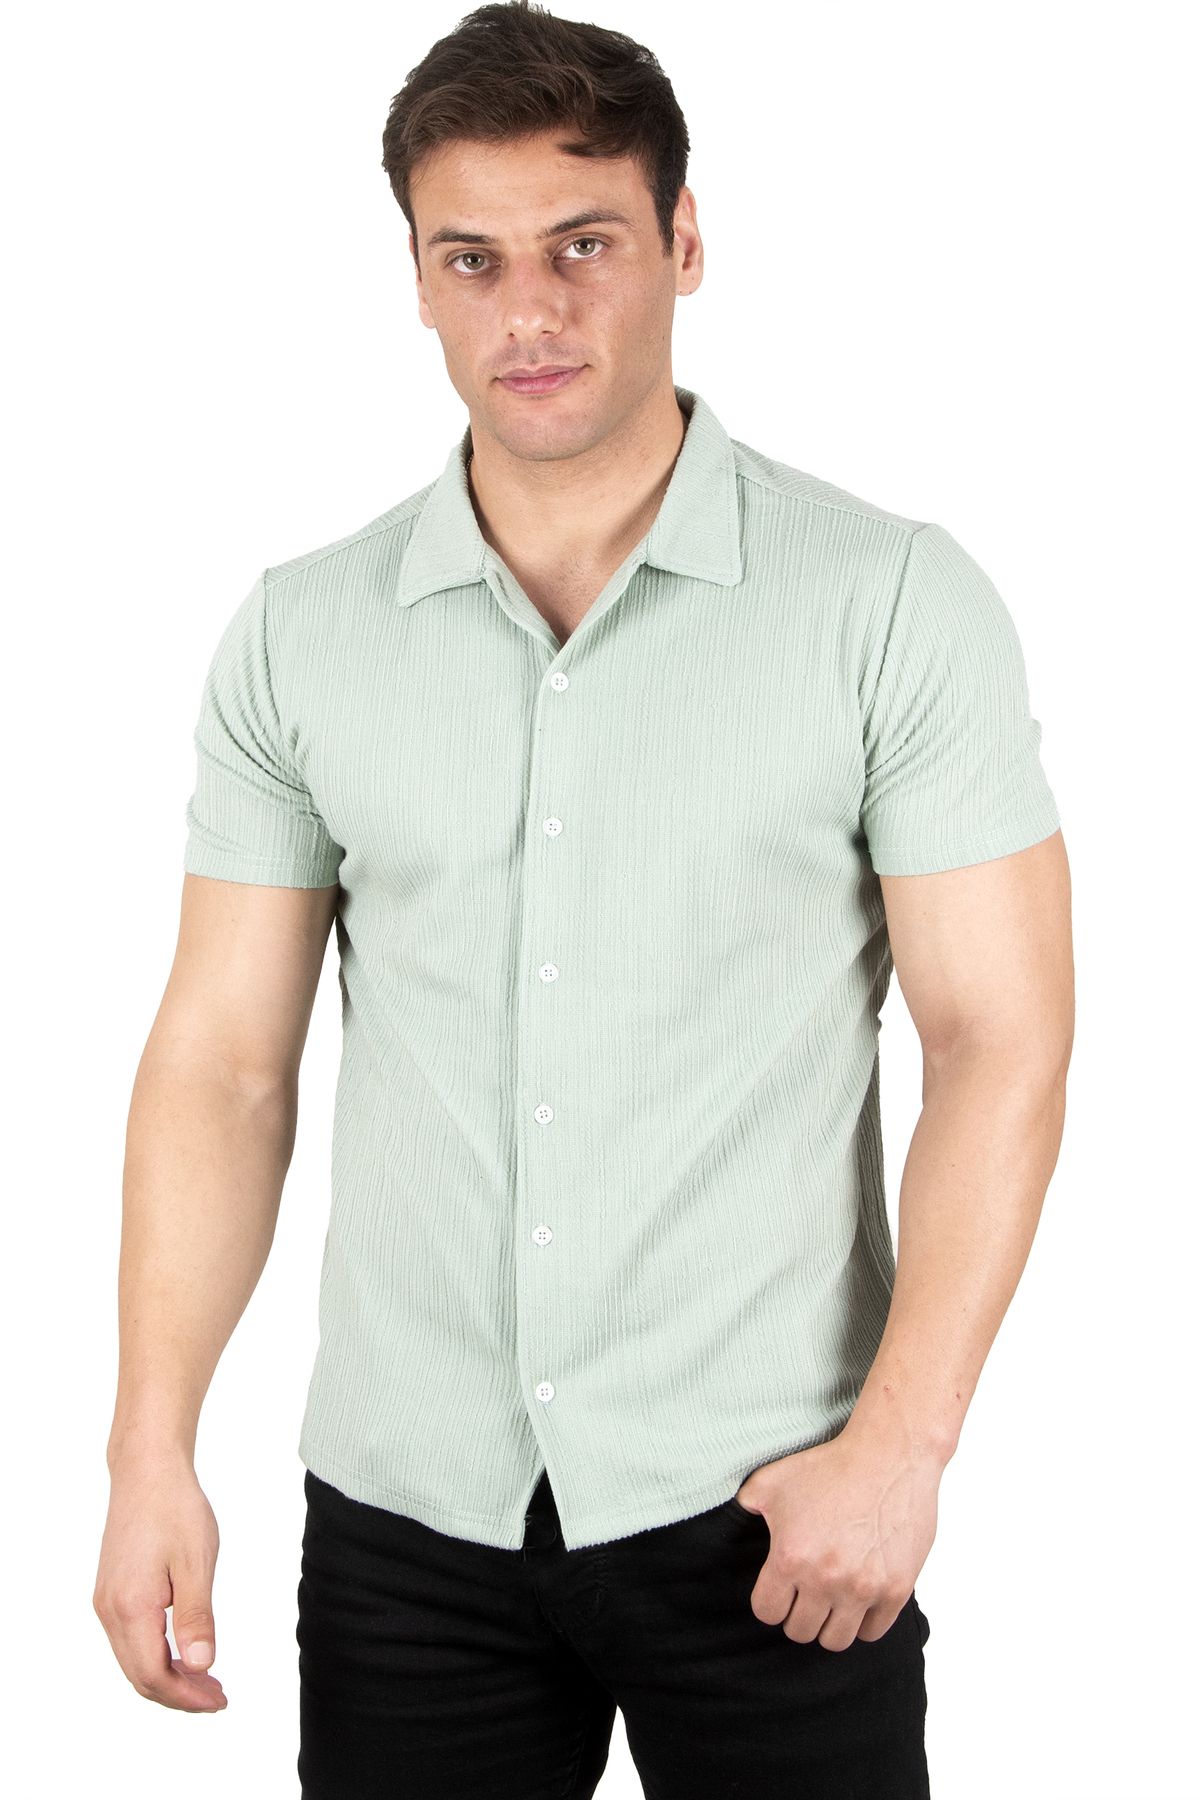 DeepSea Erkek Mint Yeşili Çizgi Desenli Kısa Kollu Düğmeli Likralı Penye Gömlek 2302323